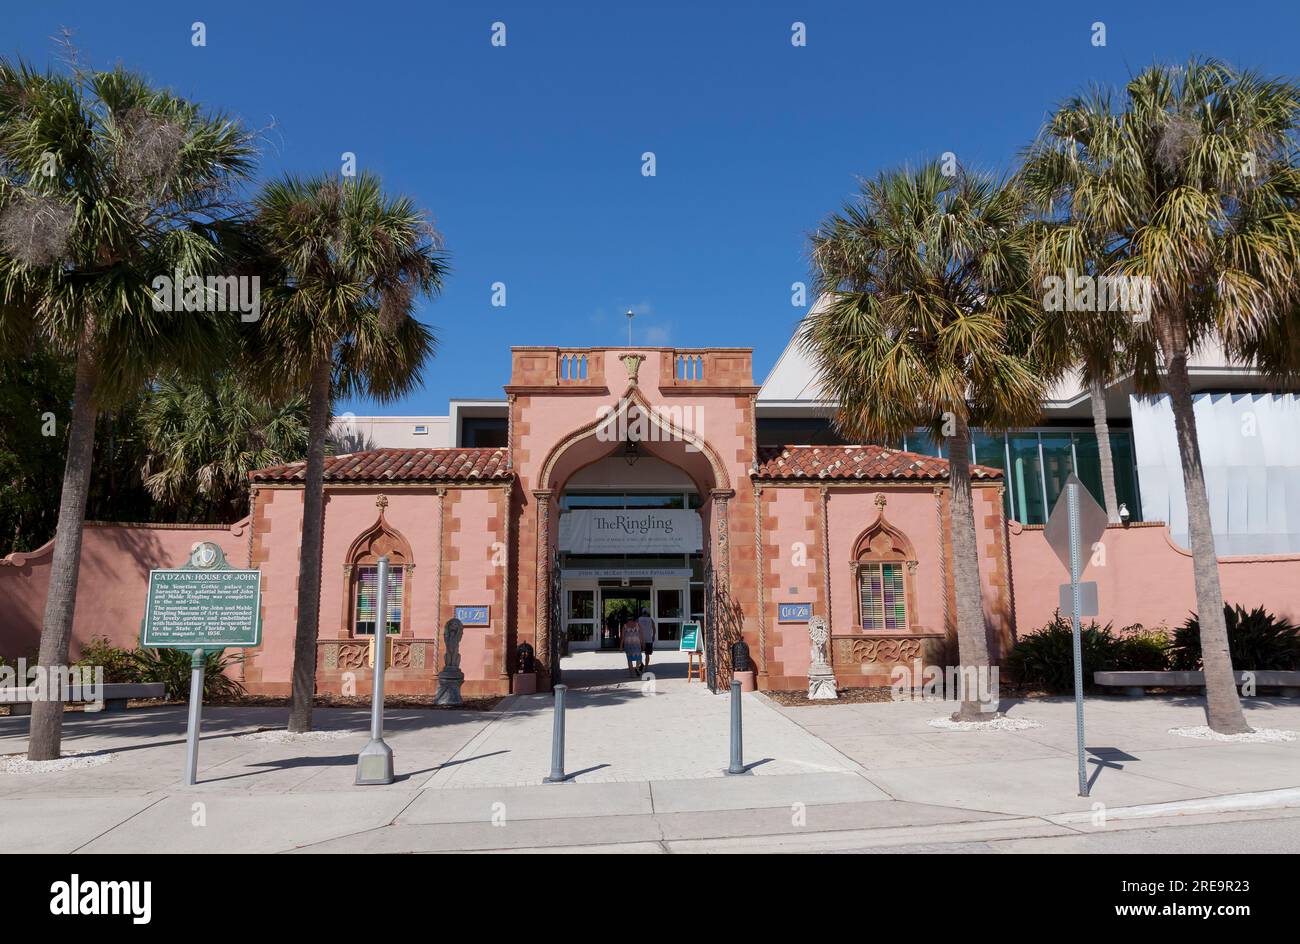 Cadzan ou CA' d'Zan [Maison de John] entrée au John & Mable Ringling Museum of Art Estate Grounds à Sarasota, Floride, États-Unis. Banque D'Images